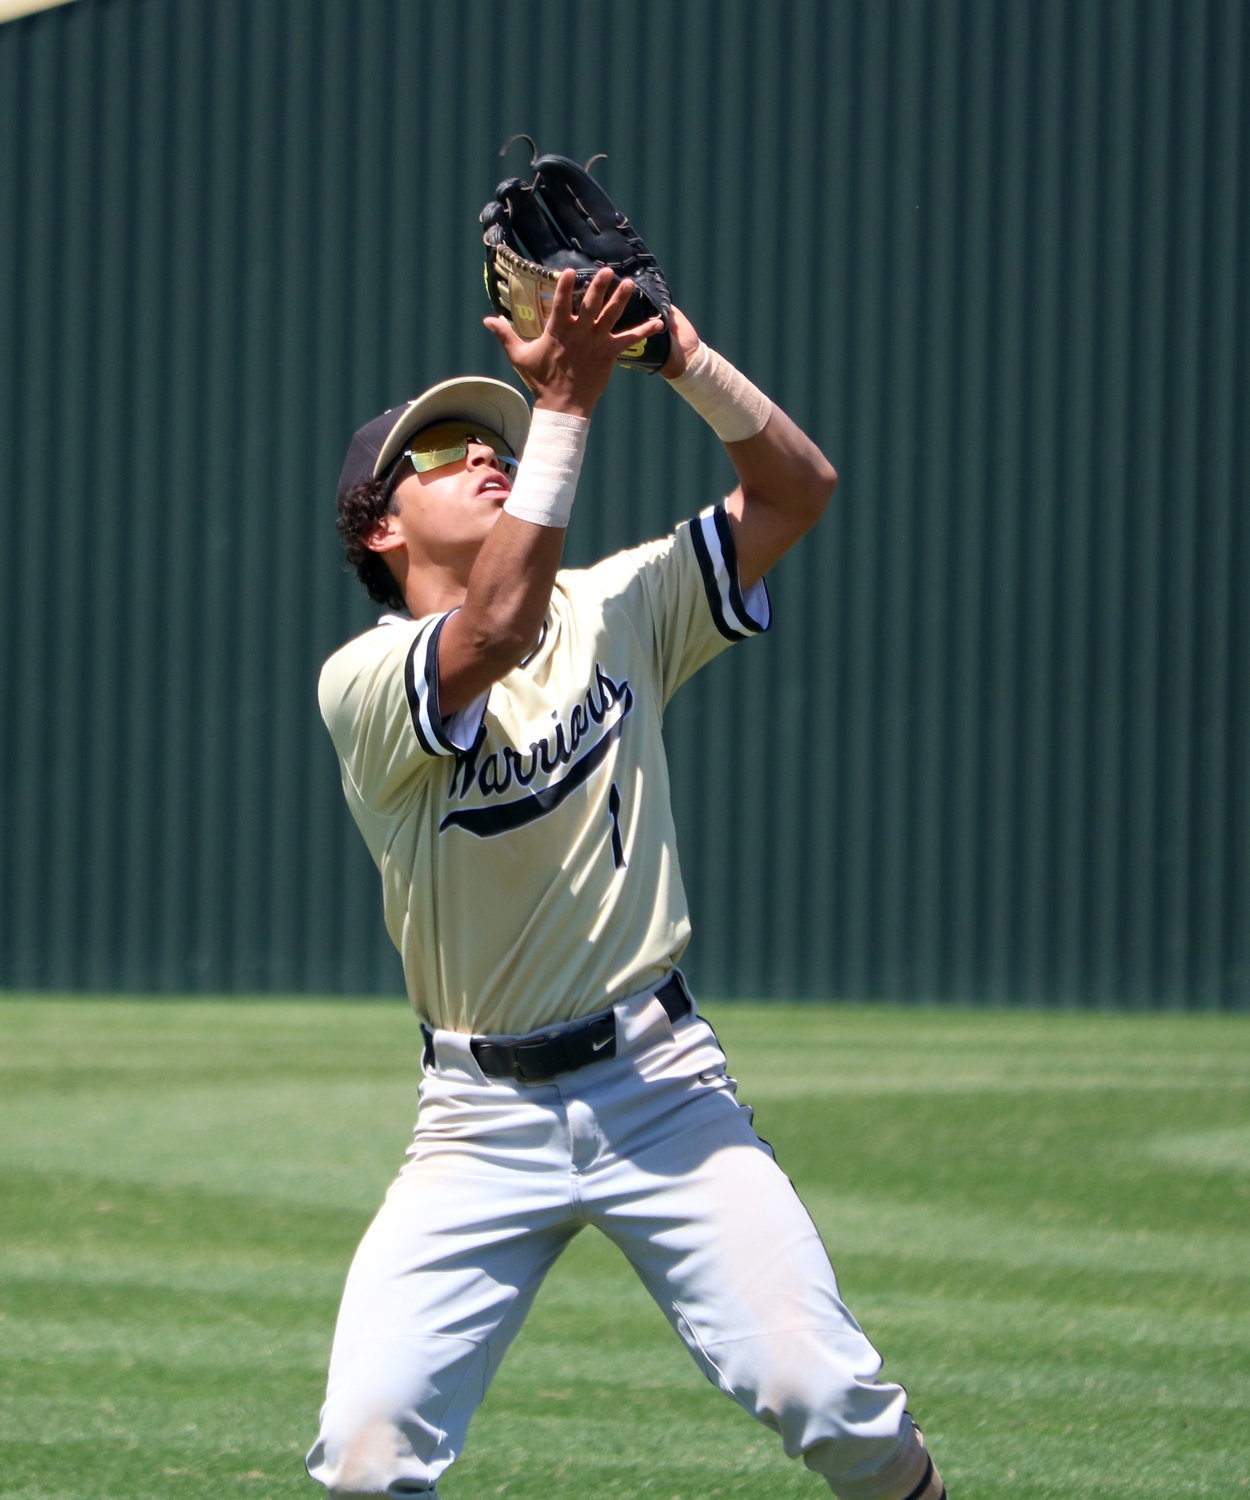 JD Ortigoza catches a fly ball during Saturday's game between Katy and Jordan at the Katy baseball field.